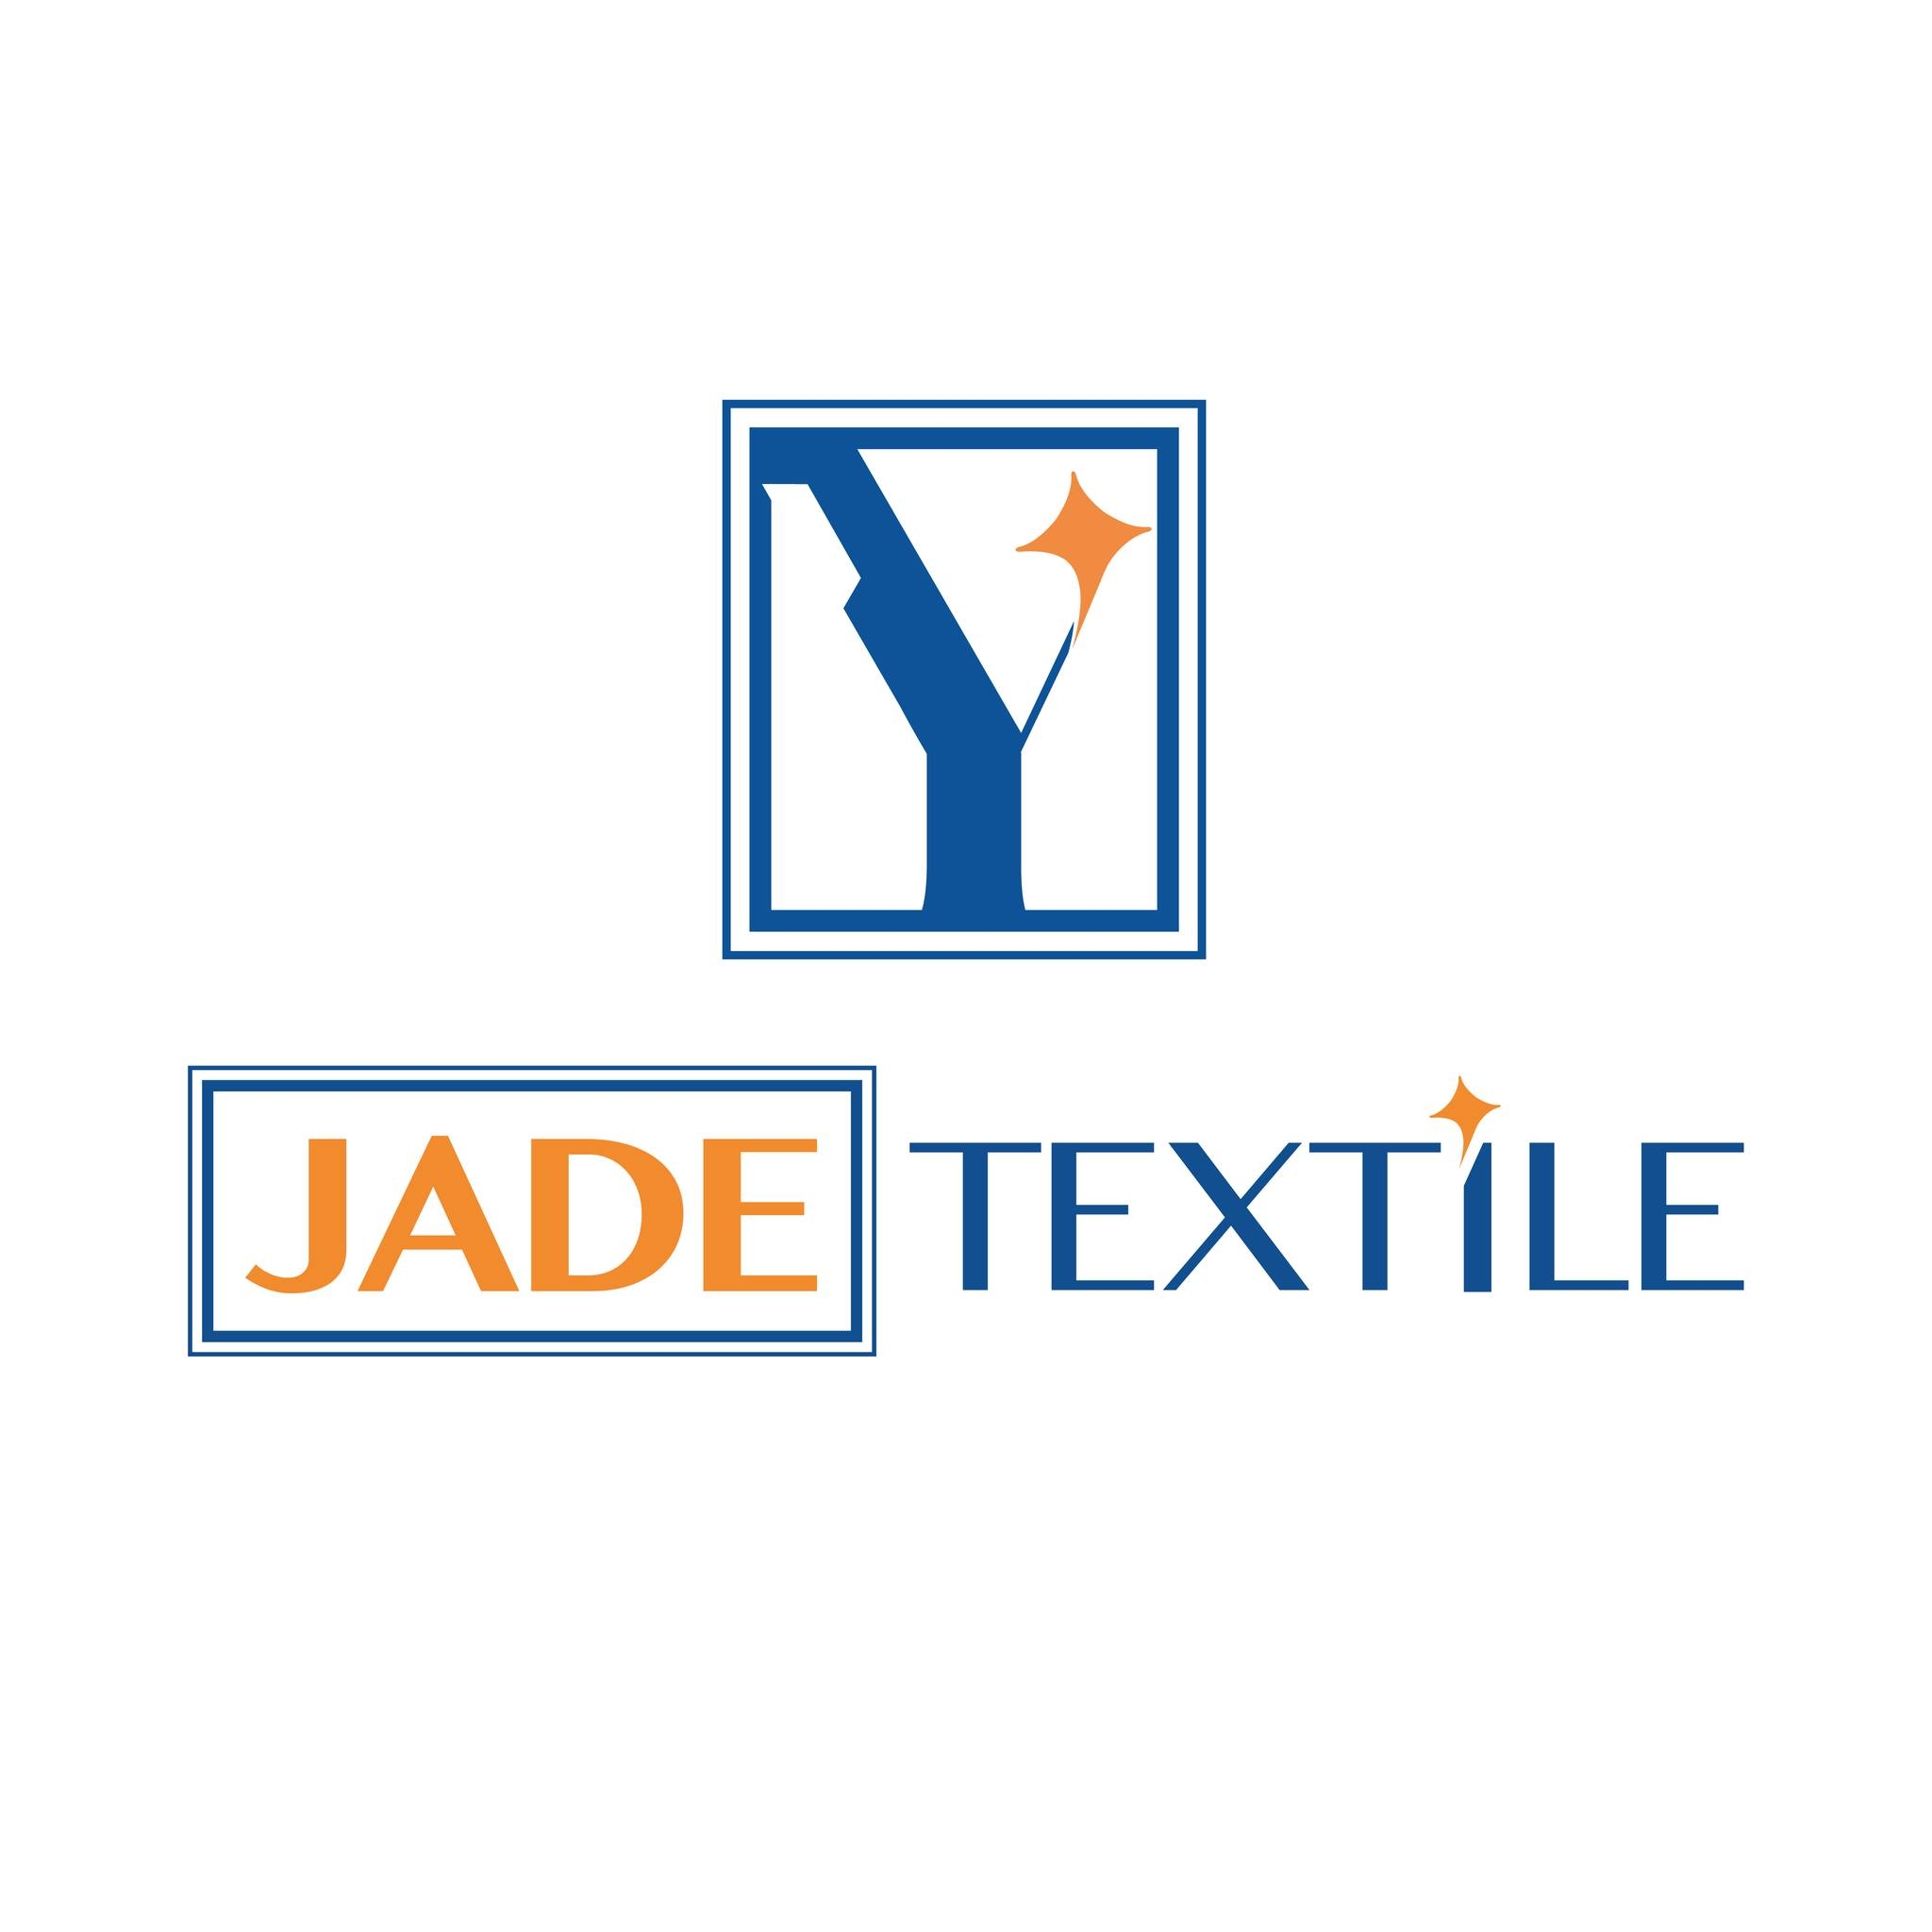 Jade Textile